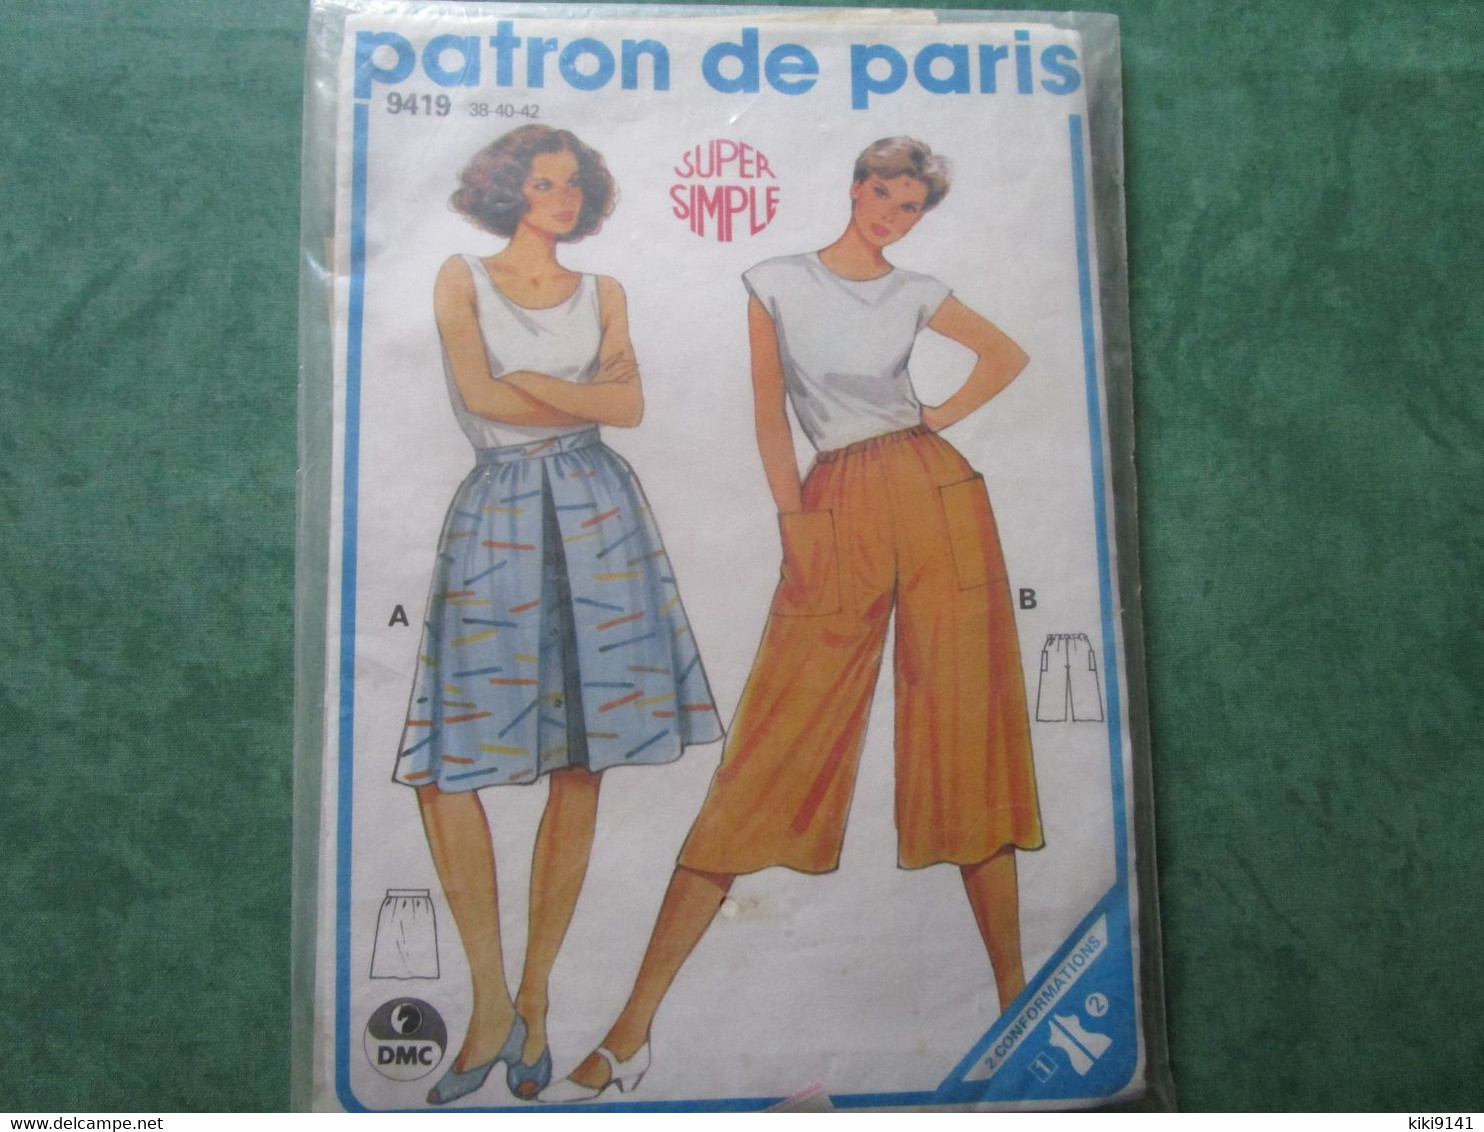 PATRON DE PARIS 9419 - 38-40-42 - Super Simple - Patterns